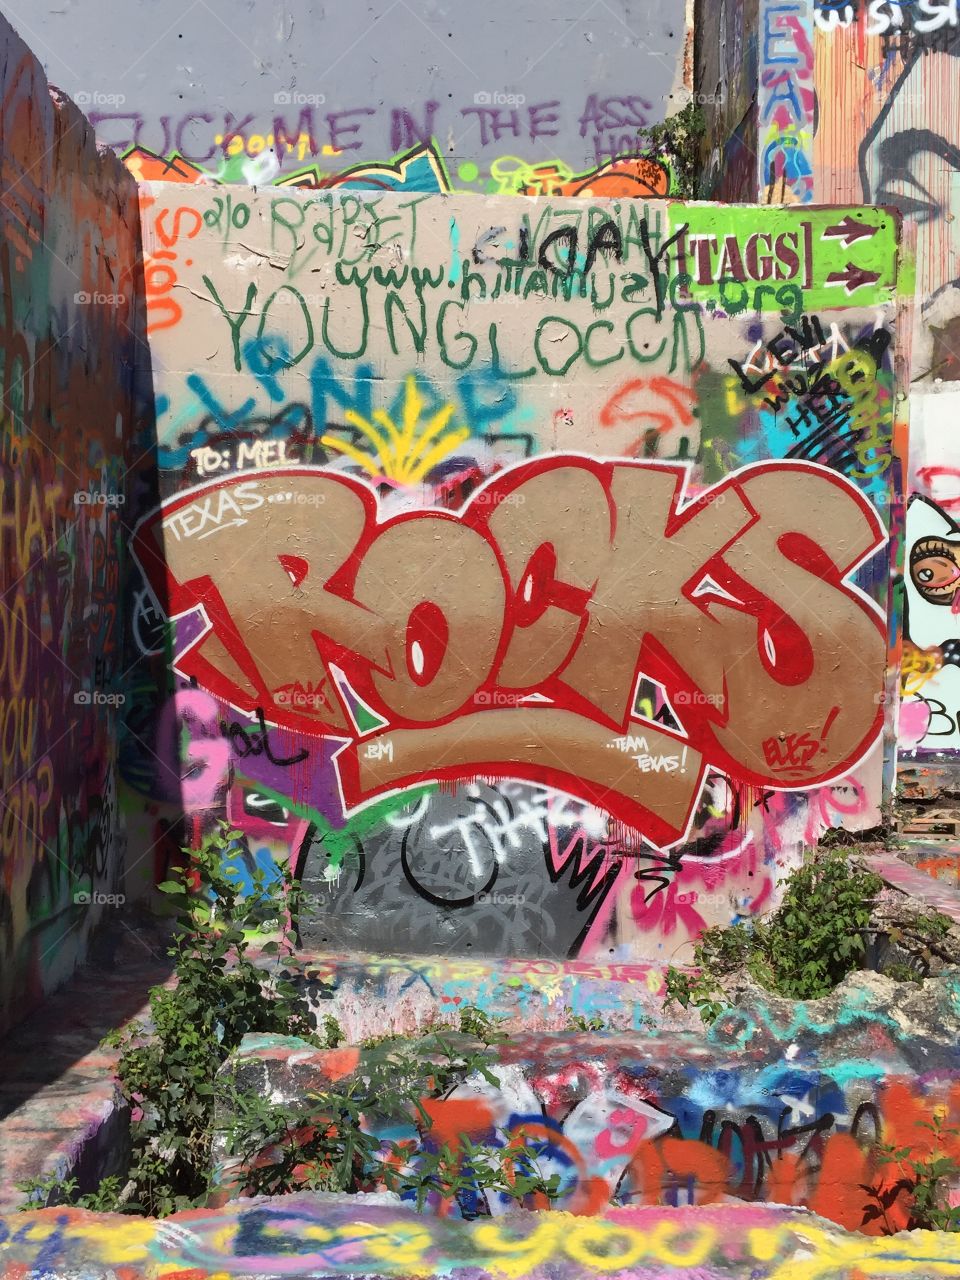 Baylor St. . Graffiti wall